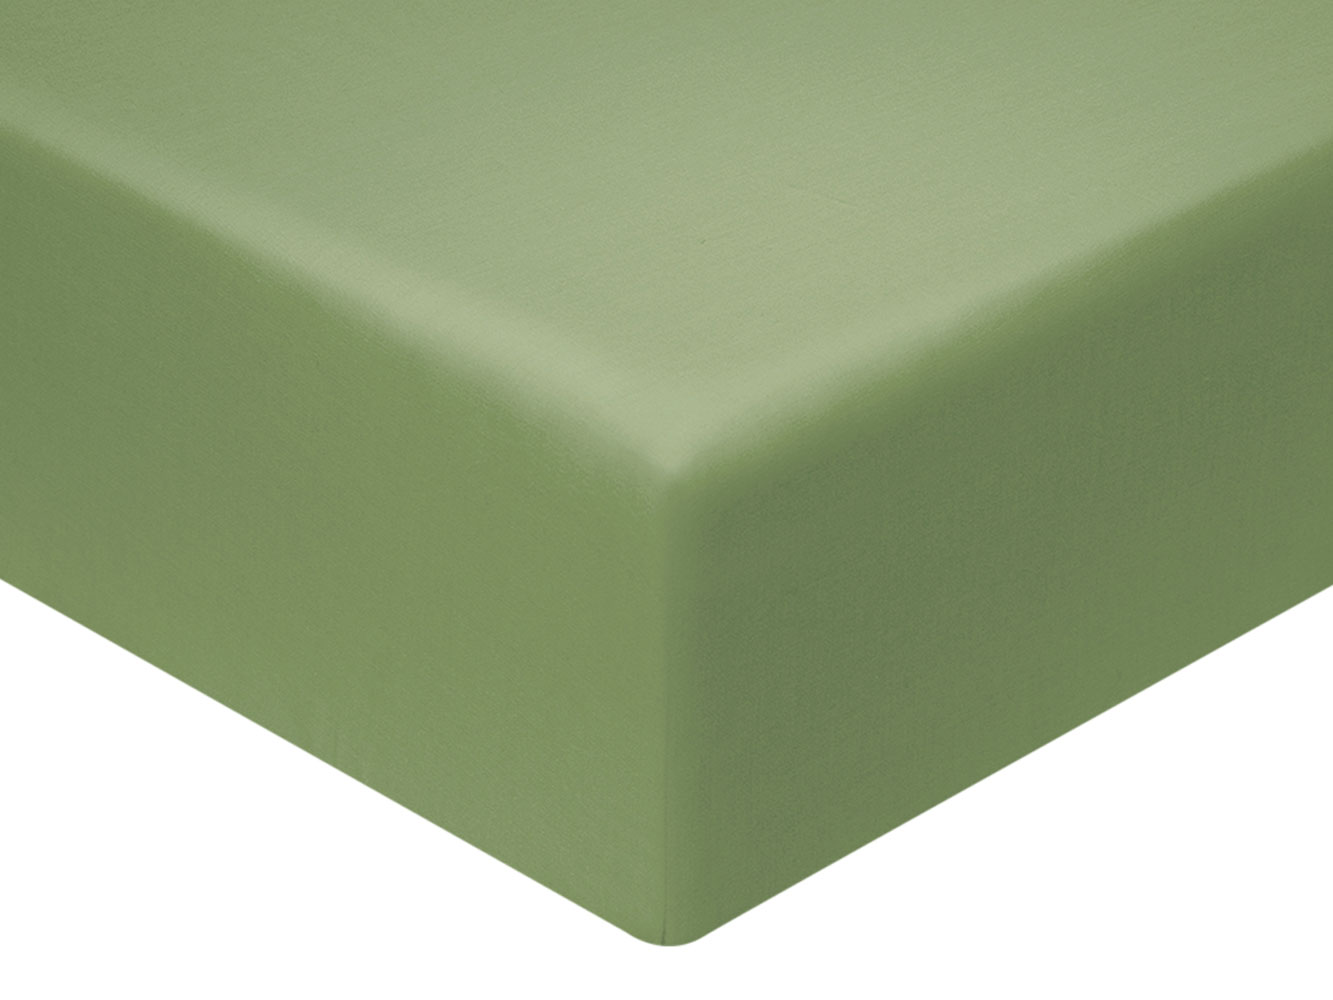 Простыня Простыня на резинке Бетани сатин зеленая Бетани зеленый на резинке фото 1